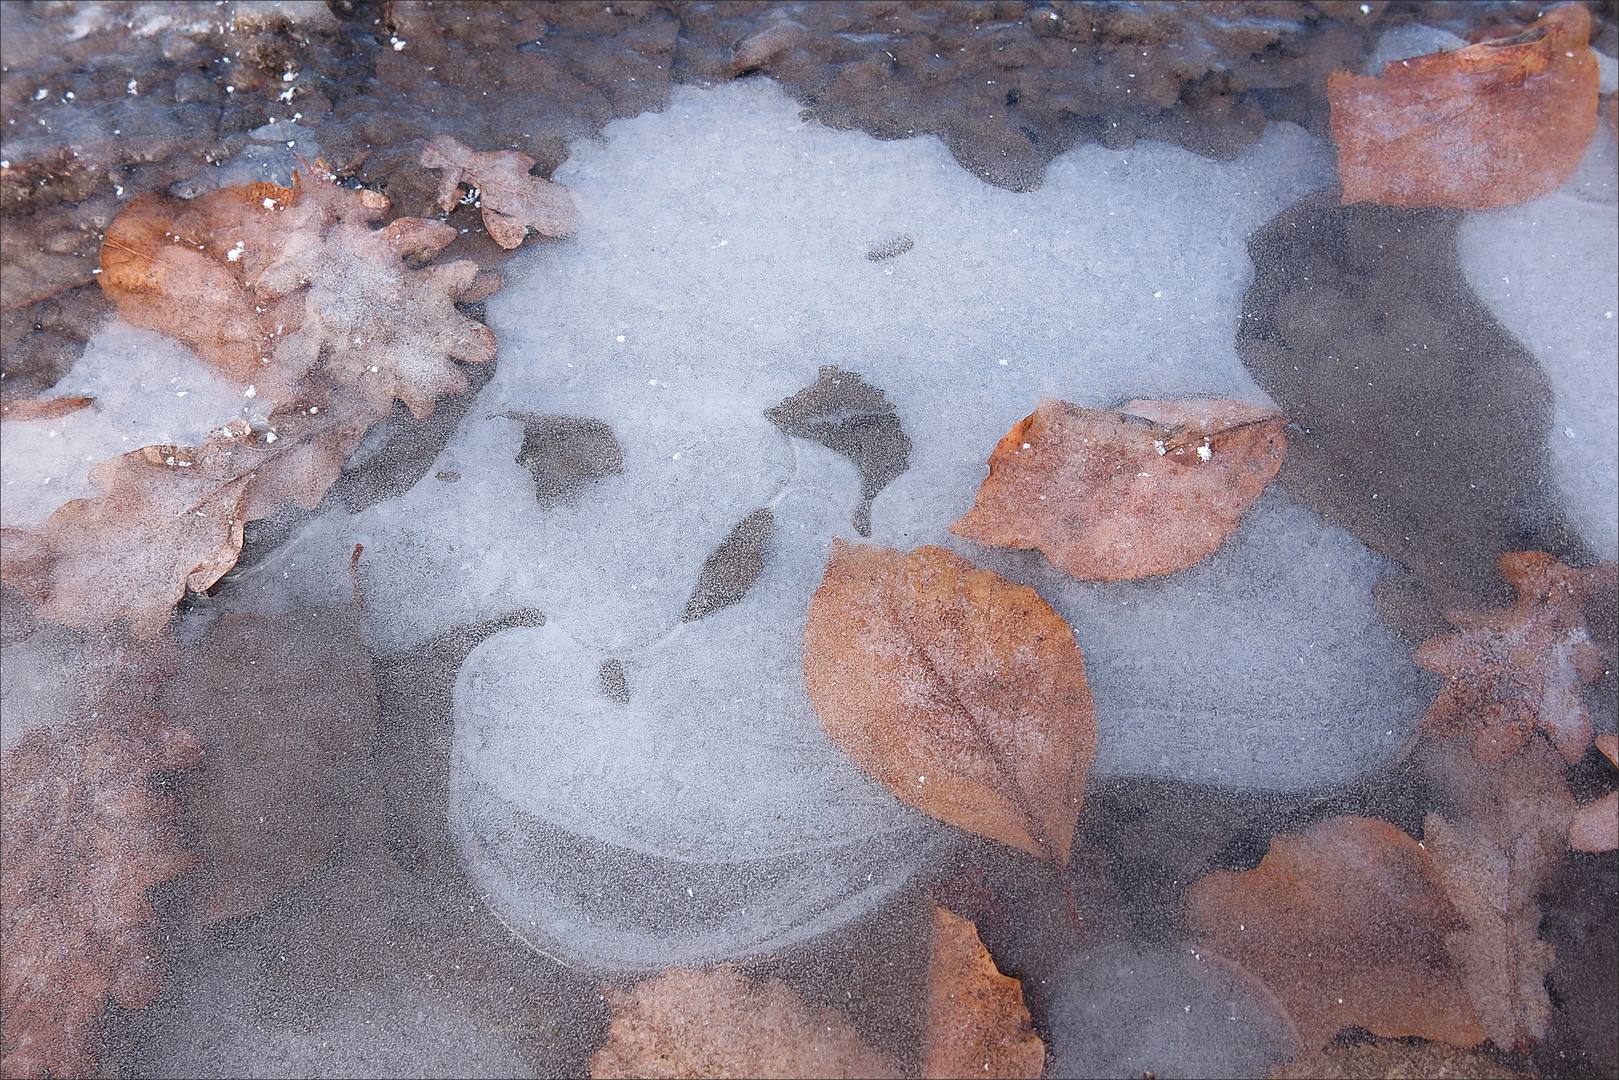 Begegnung mit einem "Wassergeist" im gefrorenem Eis